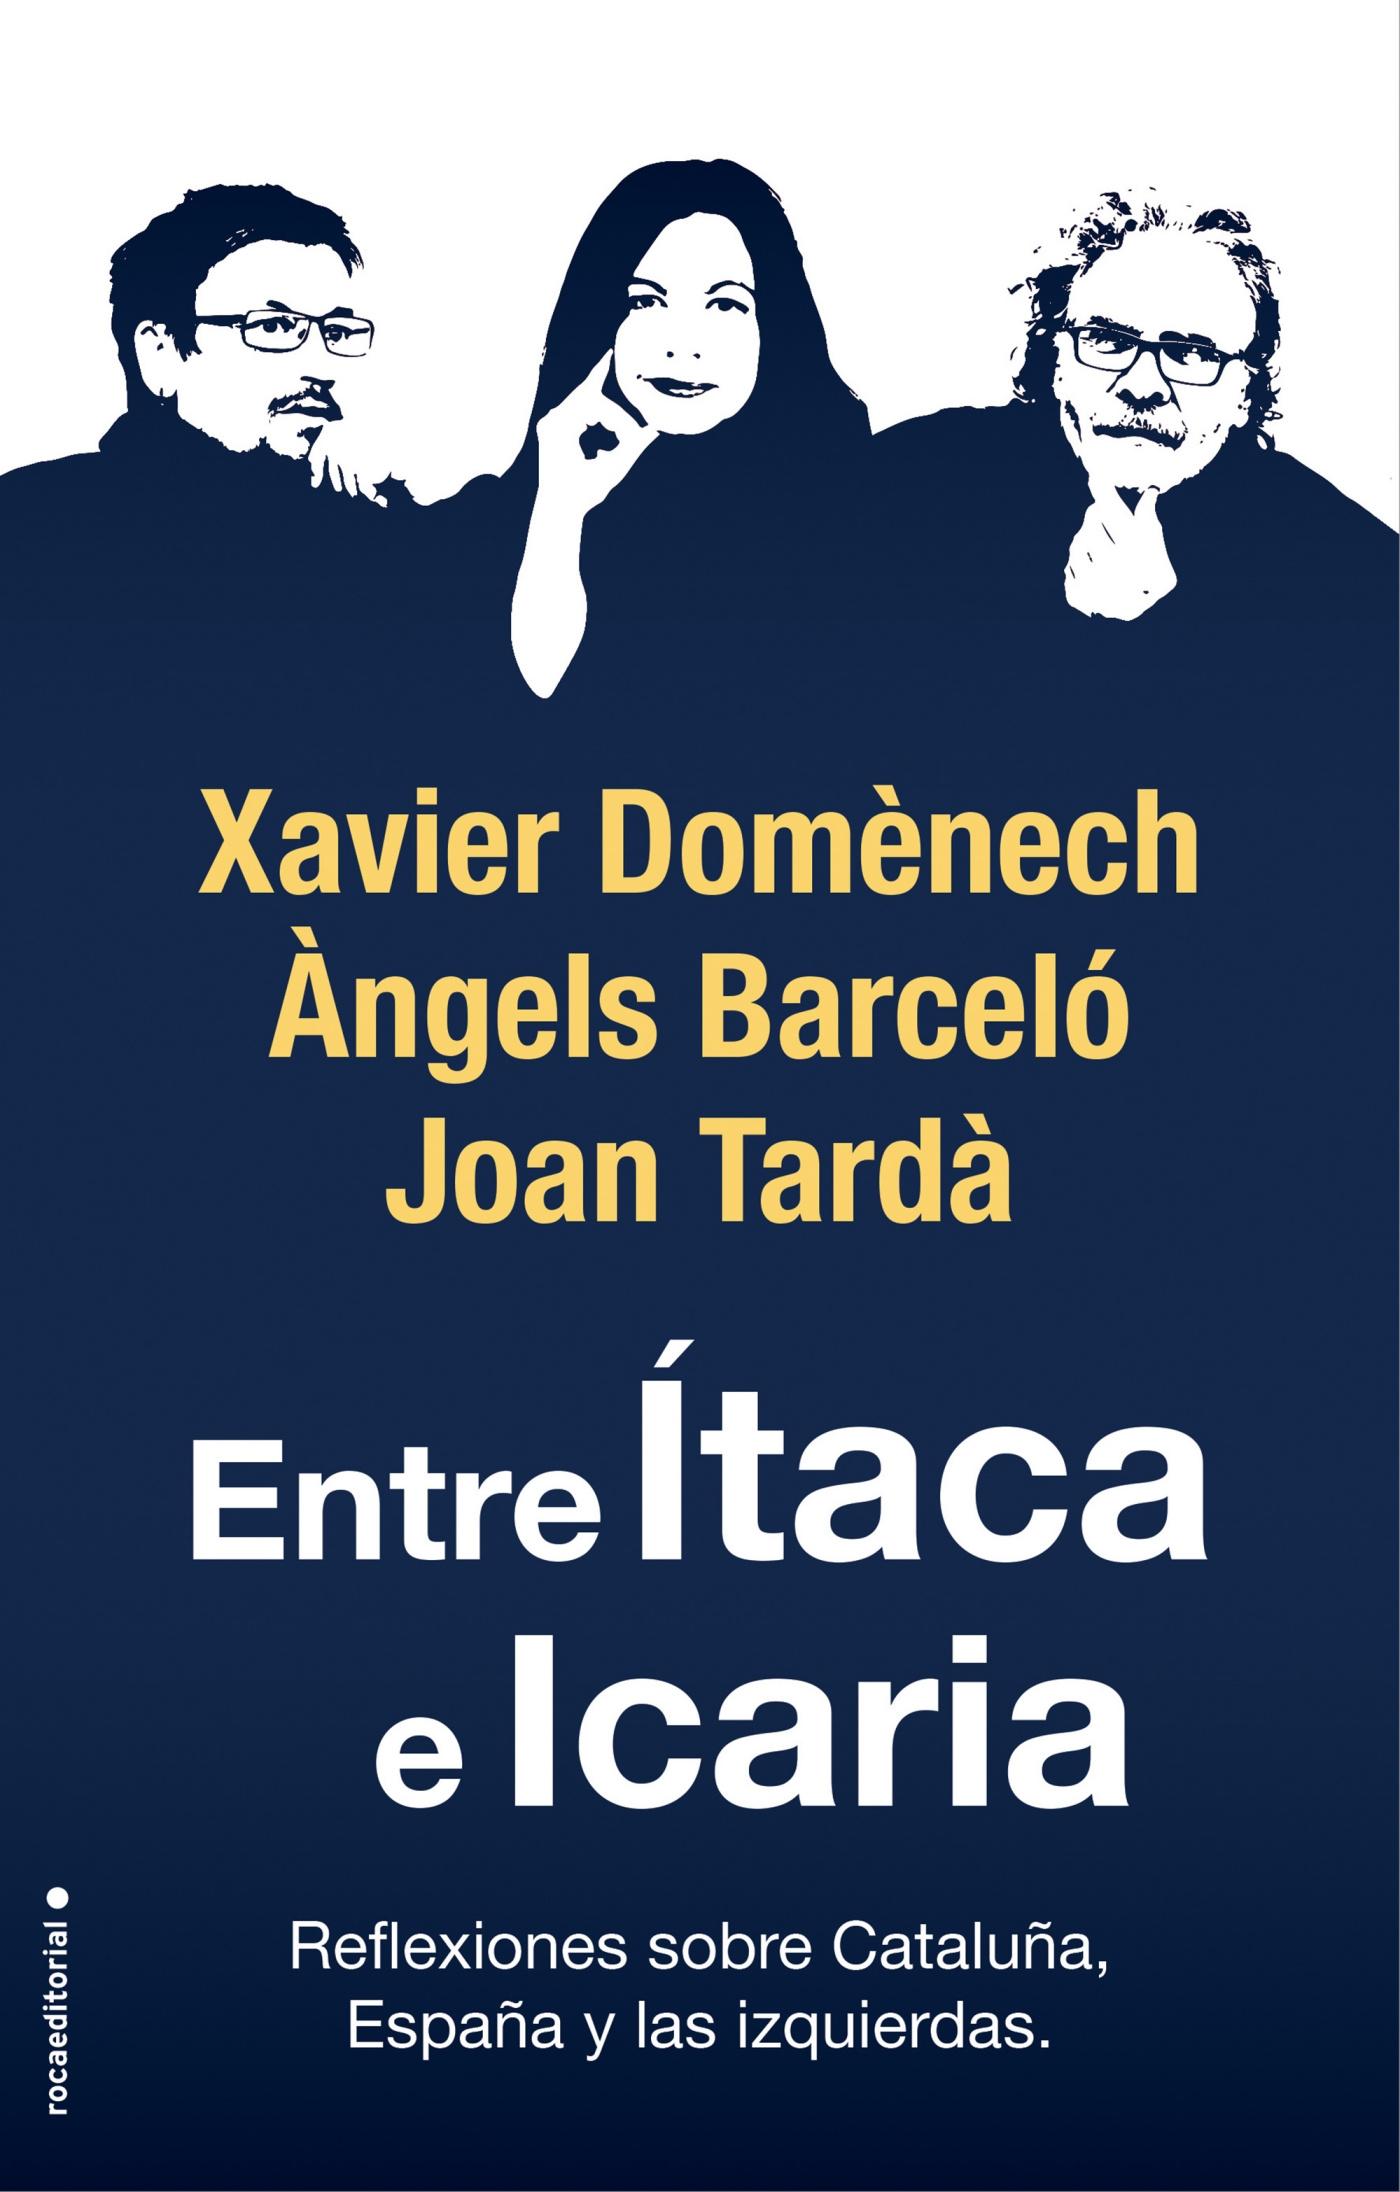 Entre Ítaca e Icaria "Reflexiones sobre Cataluña, España y las Izquierdas"